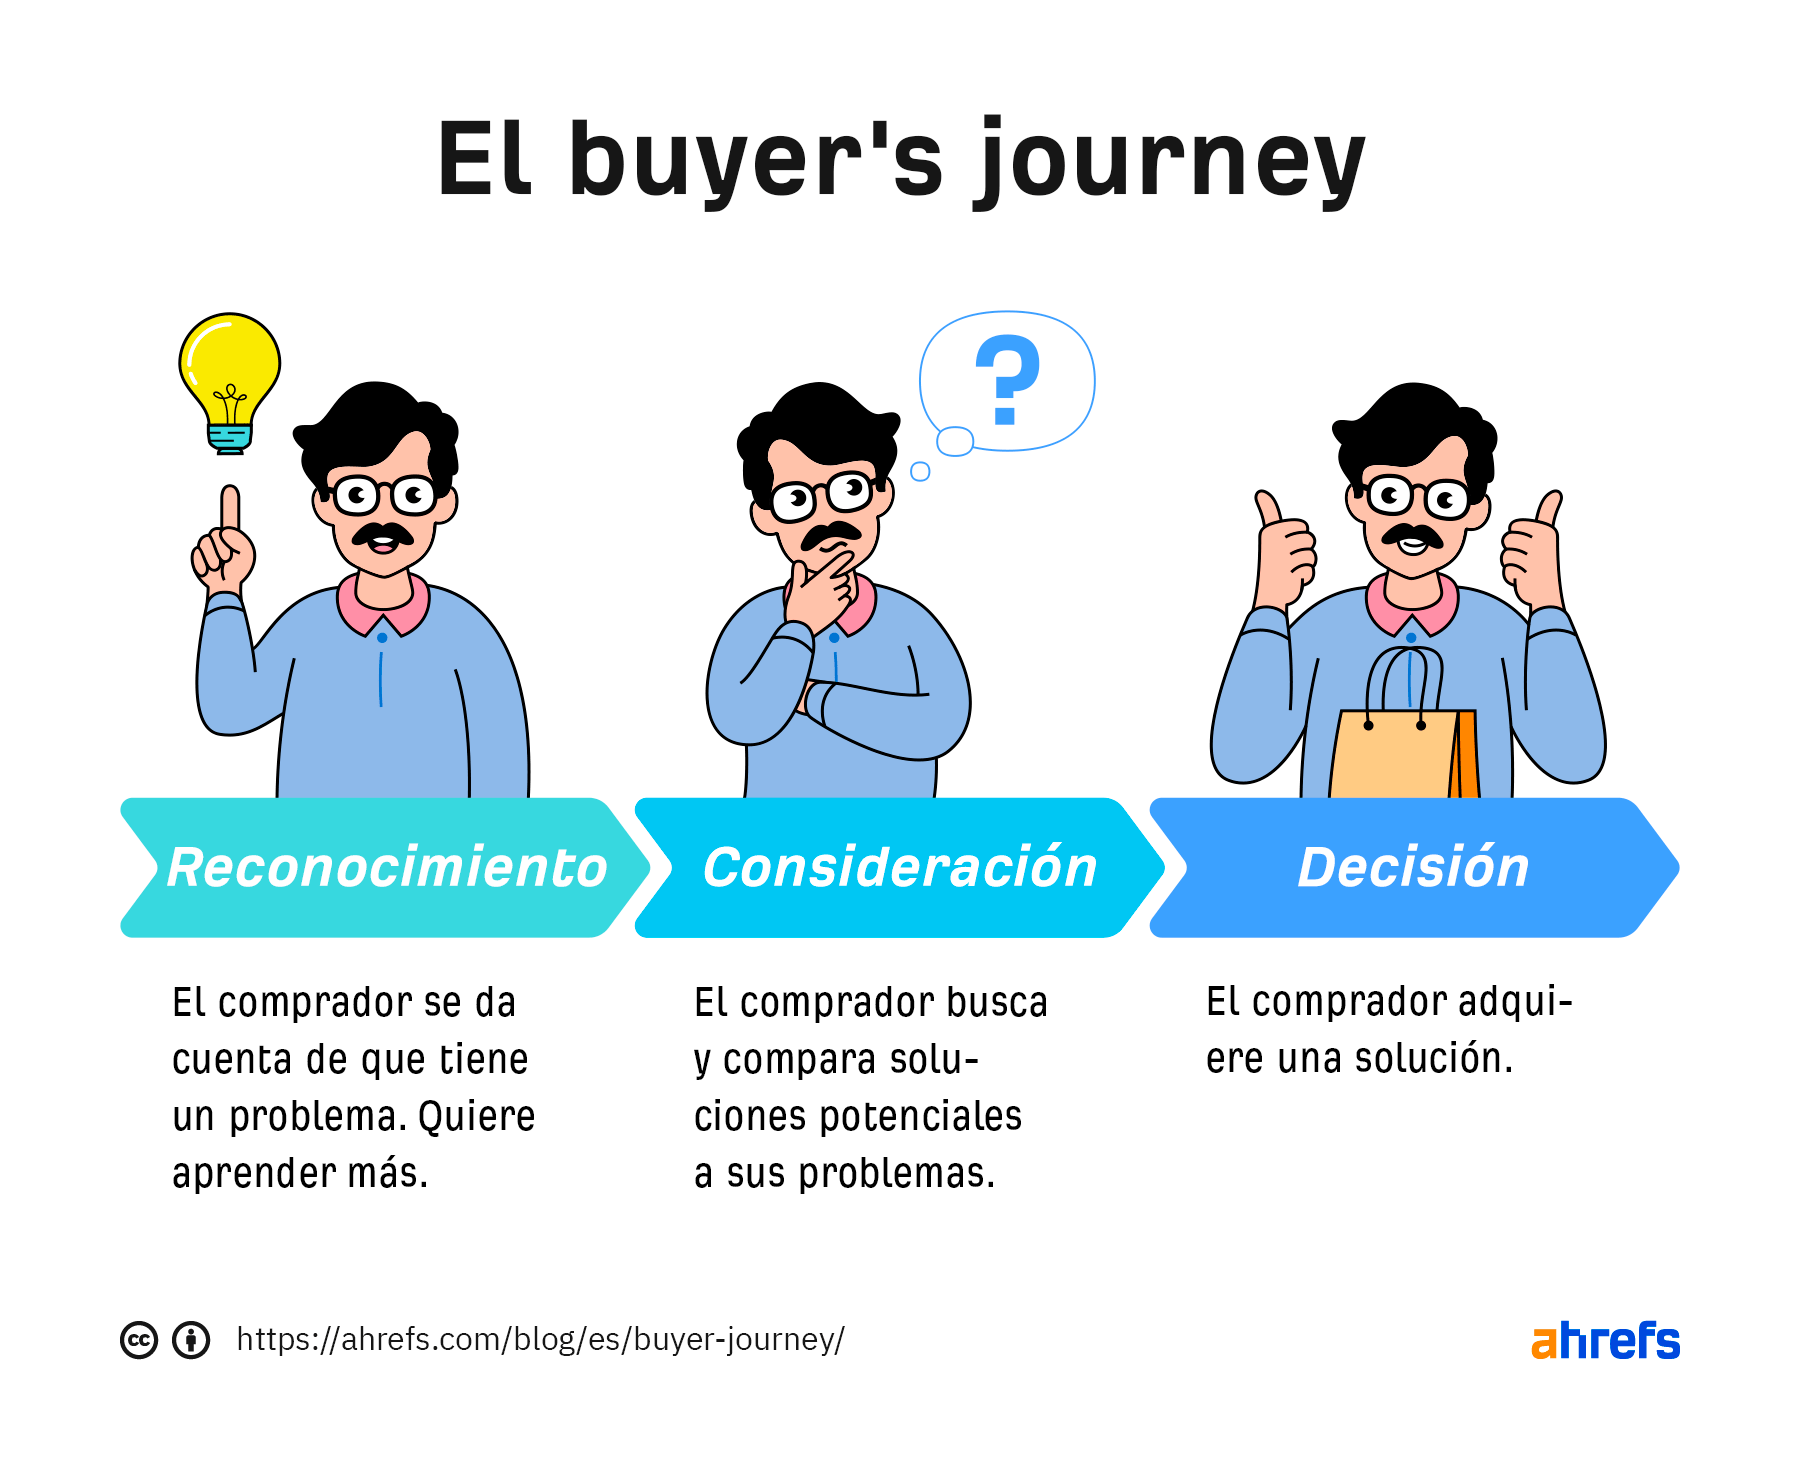 Infografía de las 3 etapas del buyer's journey: concienciación, consideración y decisión.